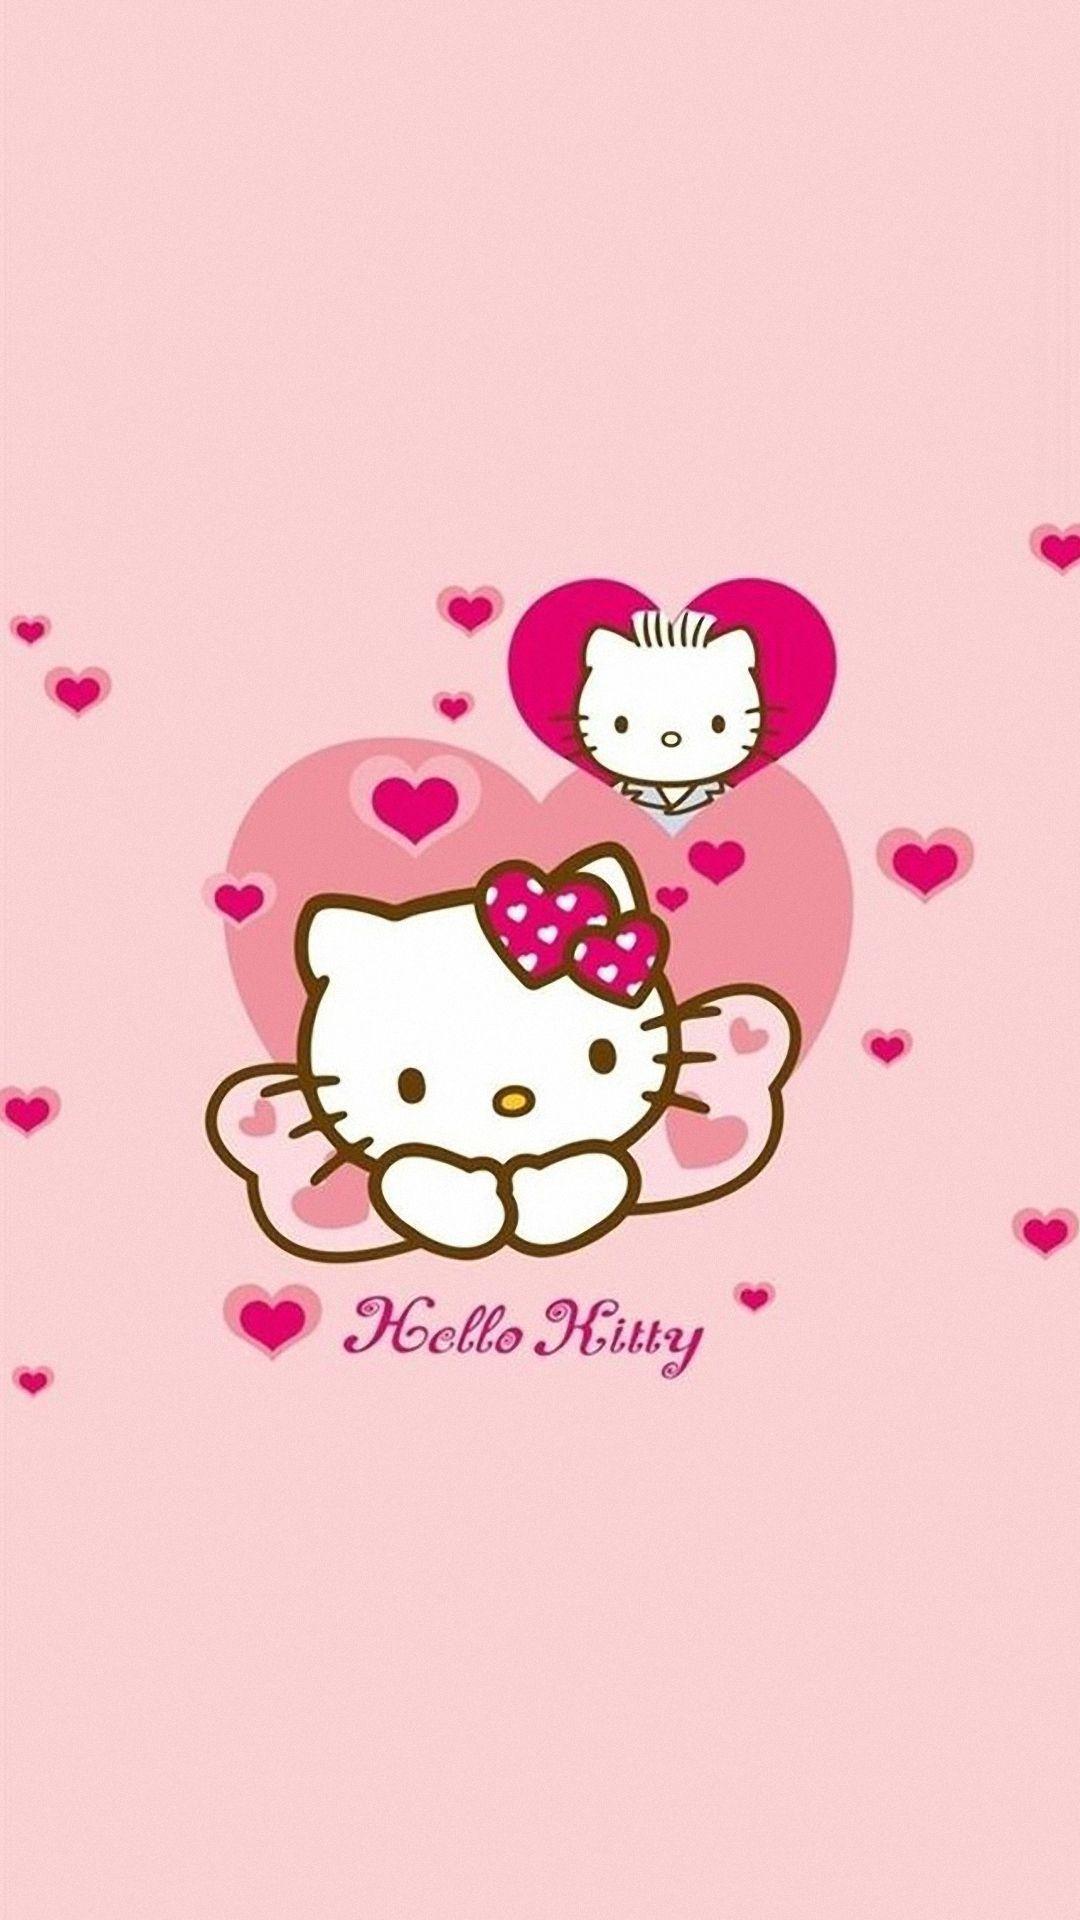 Hình nền màu hồng 1080x1920 cho iPhone Hình nền dễ thương Hello Kitty - Hình nền dễ thương Hello Kitty cho iPhone 6, Tải xuống hình nền